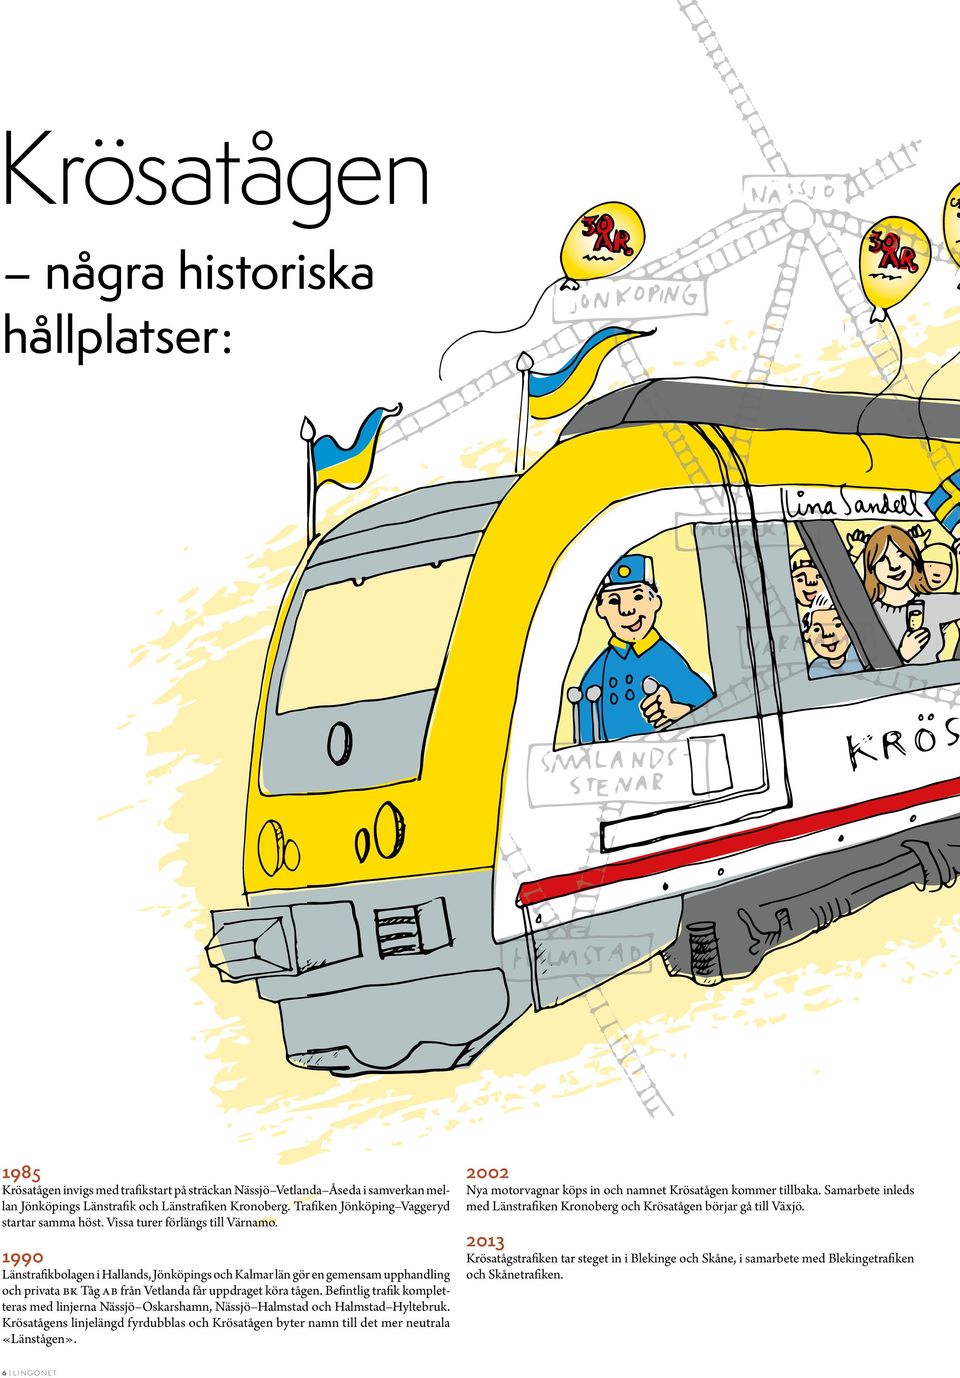 1990 Länstrafikbolagen i Hallands, Jönköpings och Kalmar län gör en gemensam upphandling och privata BK Tåg AB från Vetlanda får uppdraget köra tågen.